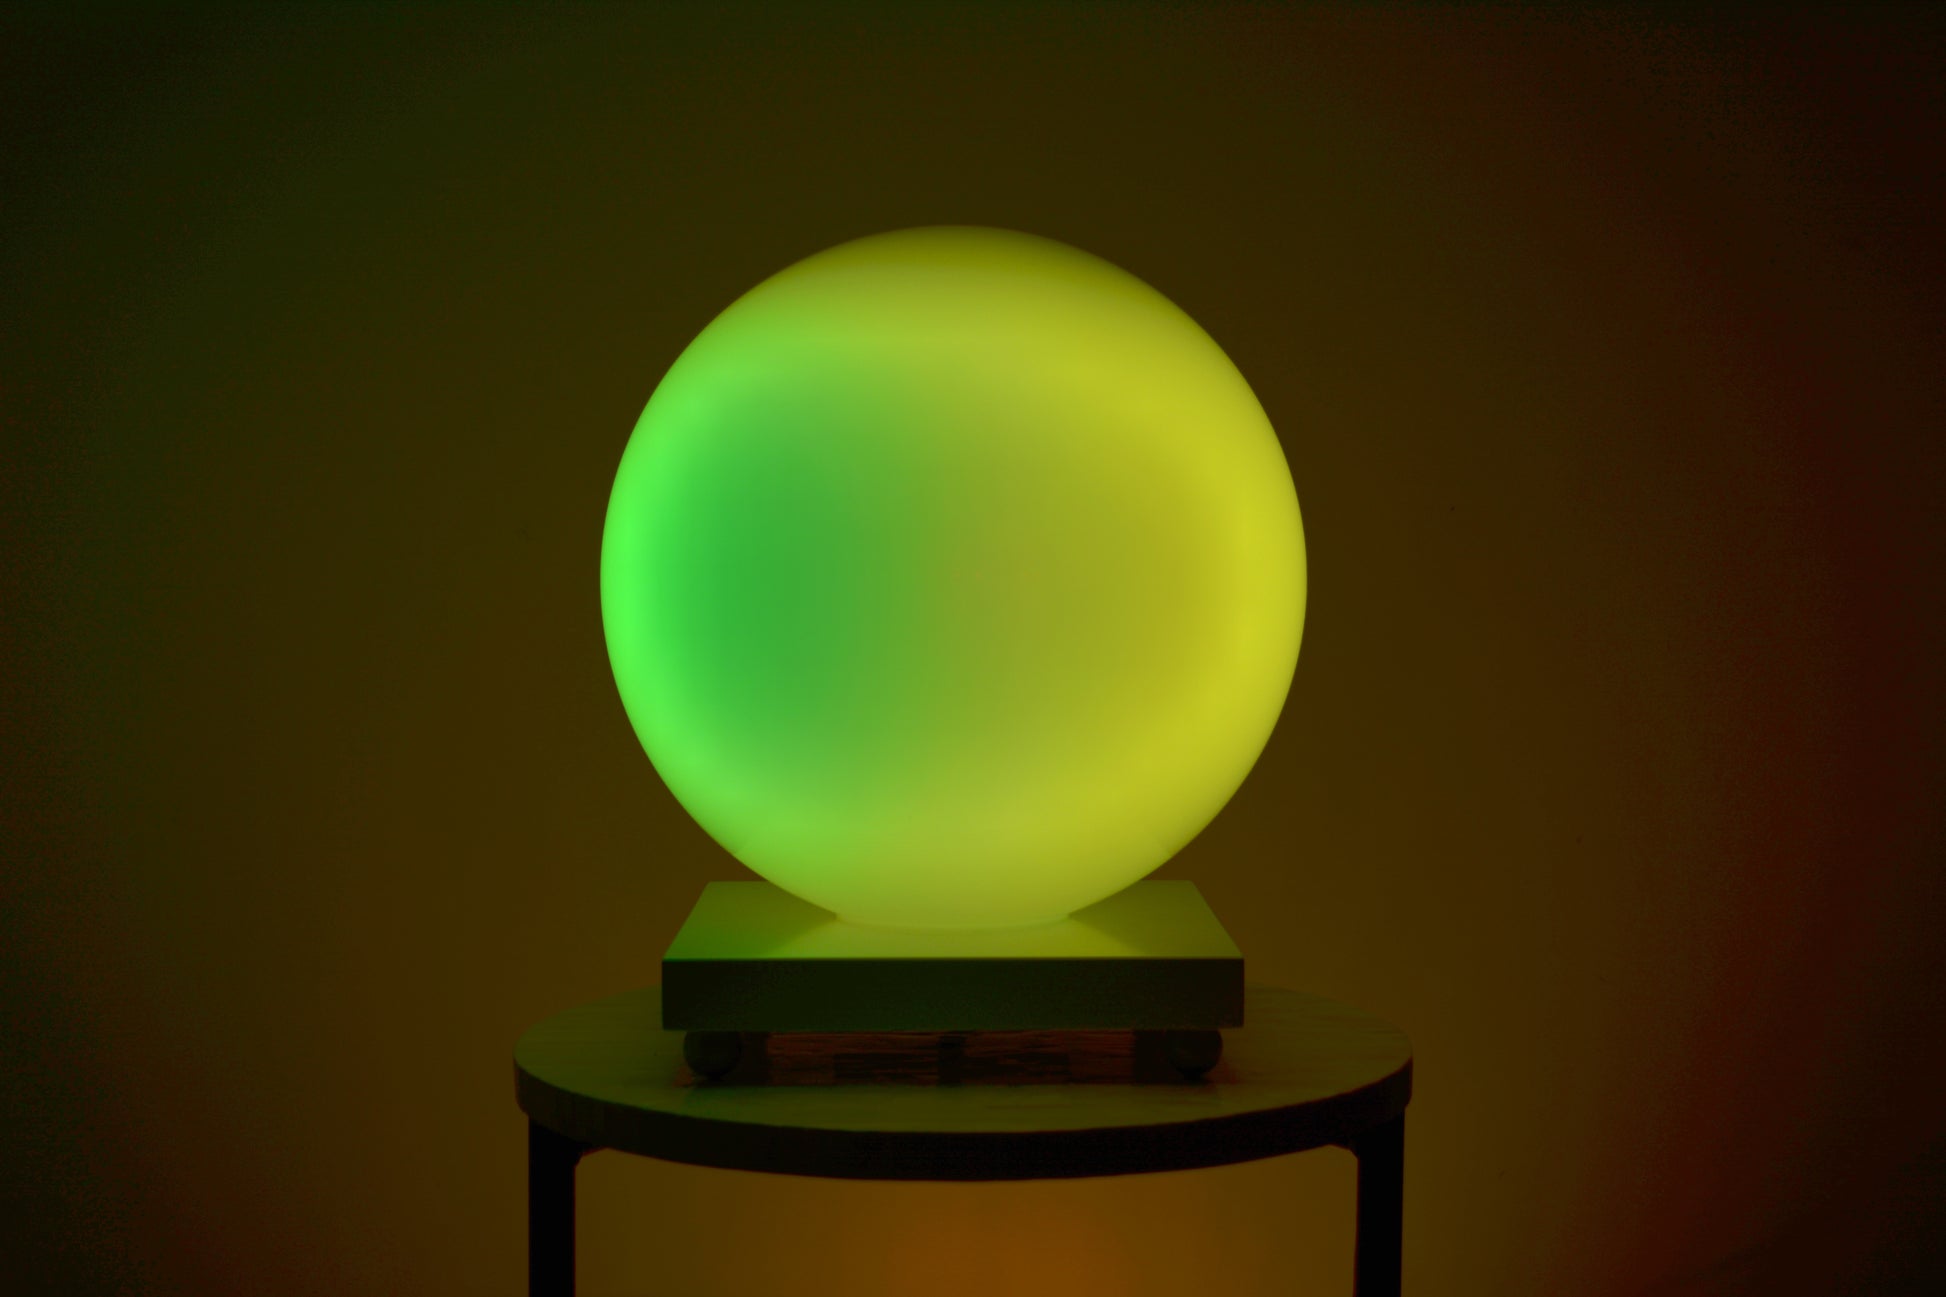 Une Sensosphère ayant un dégradé de couleur jaune et vert est posée sur une table basse